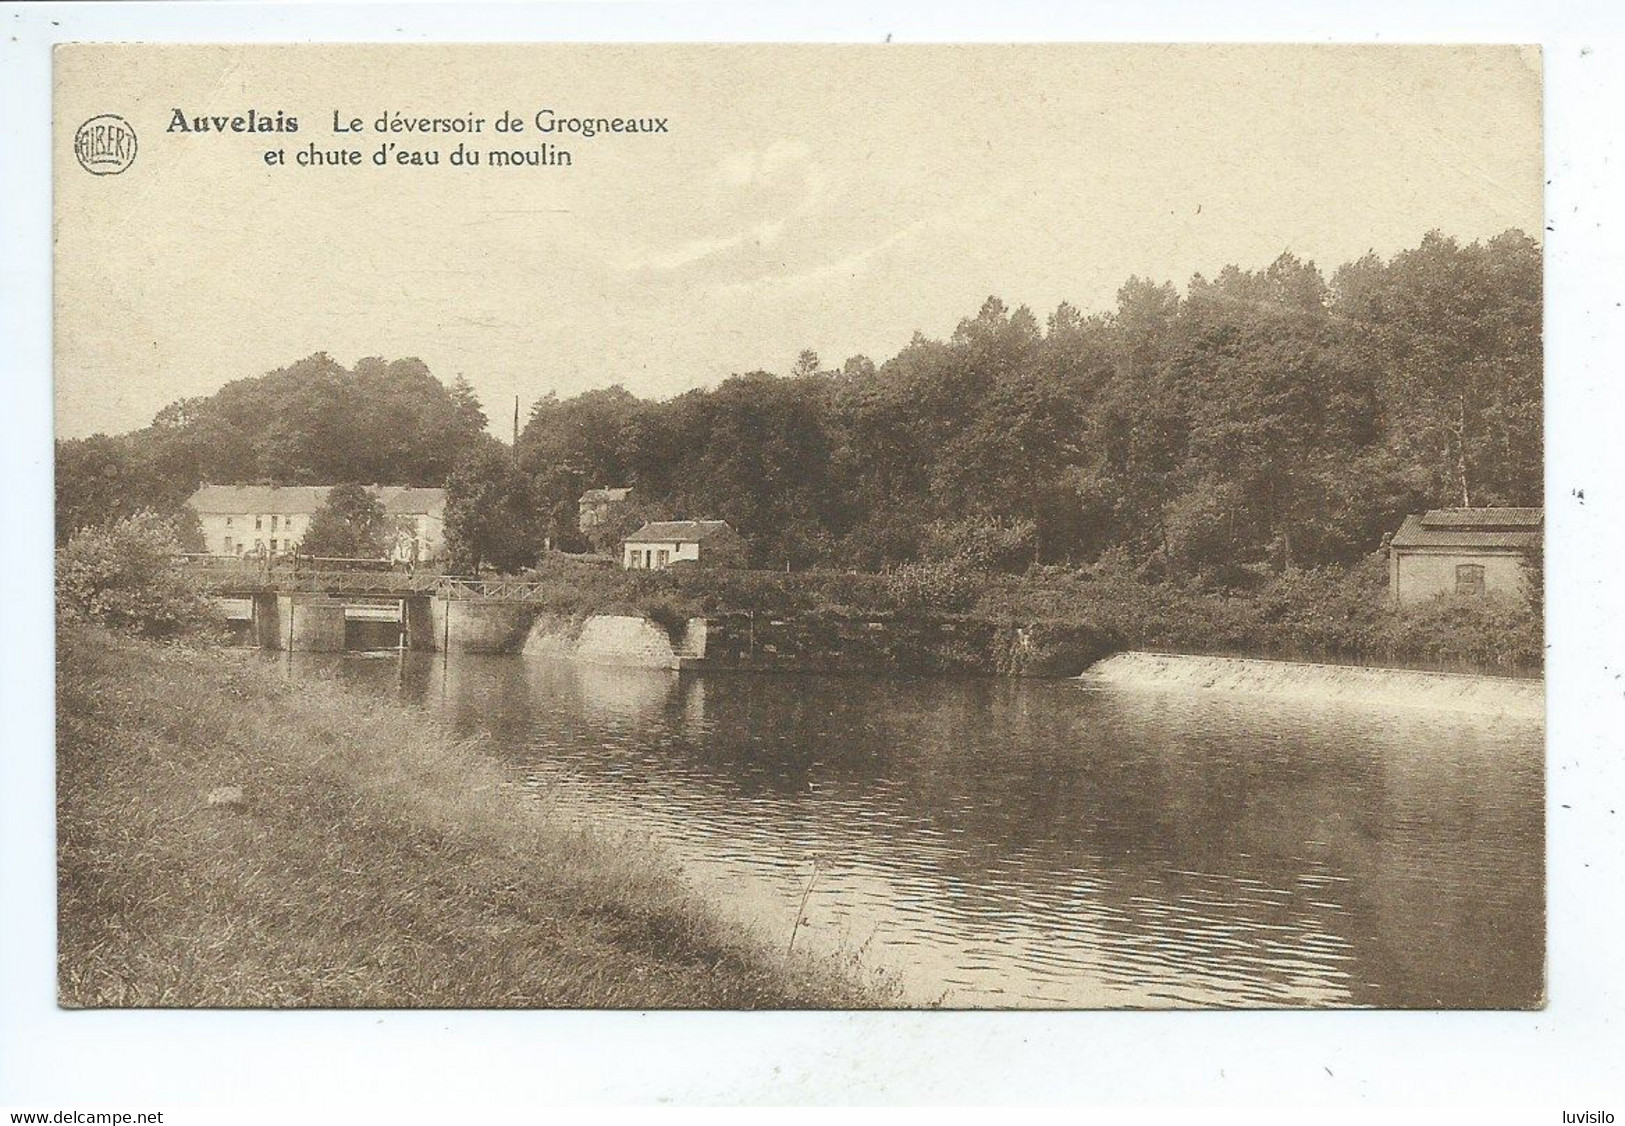 Auvelais Le Déversoir De Grogneaux Et Chute D'eau Du Moulin - Sambreville